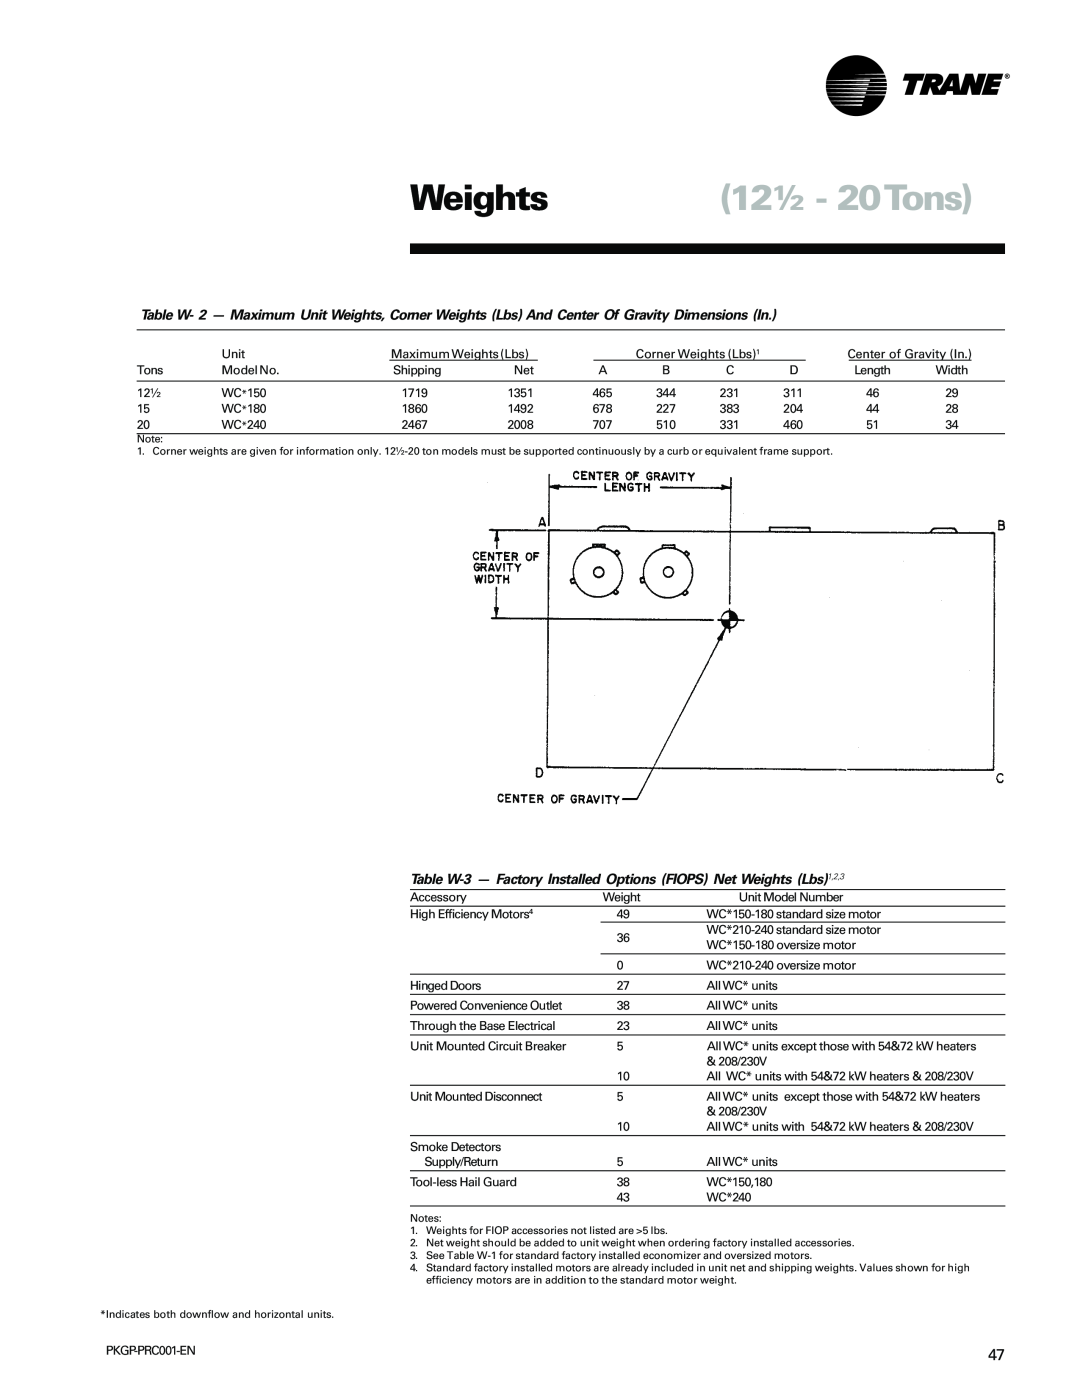 Trane PKGP-PRC001-EN manual Weights 12½ - 20Tons, Unit 